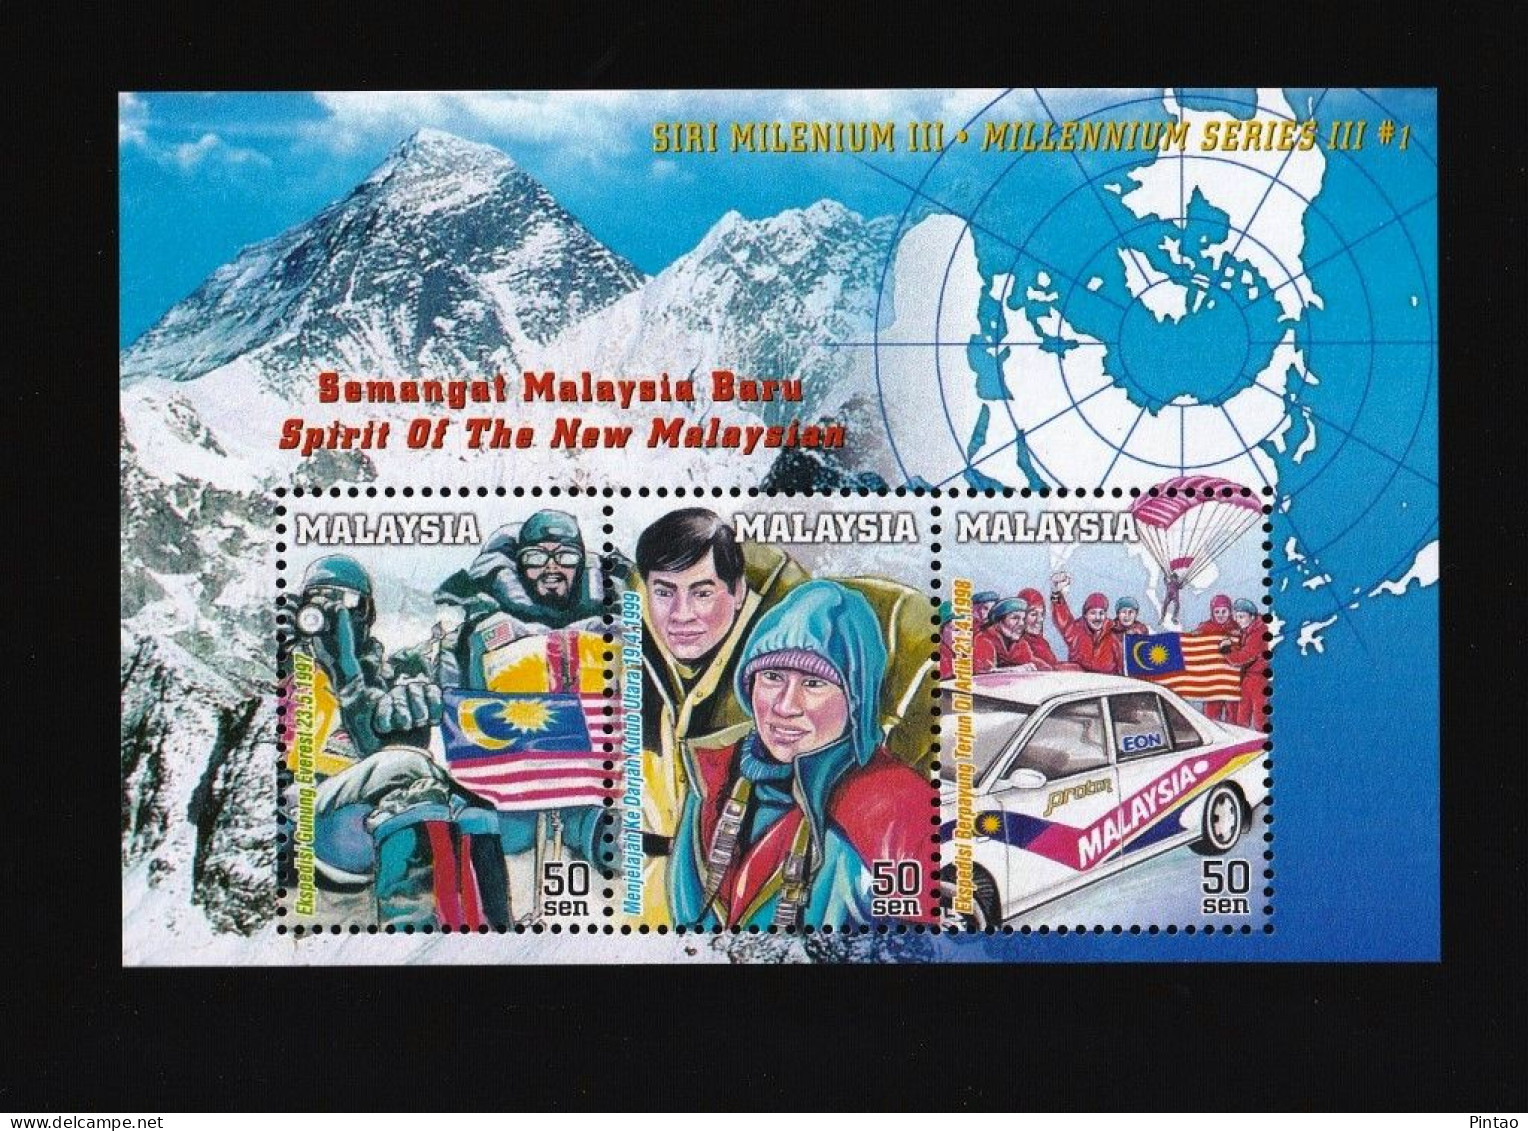 WW14417- MALÁSIA 1999- MNH (MILENIUM) - Malesia (1964-...)